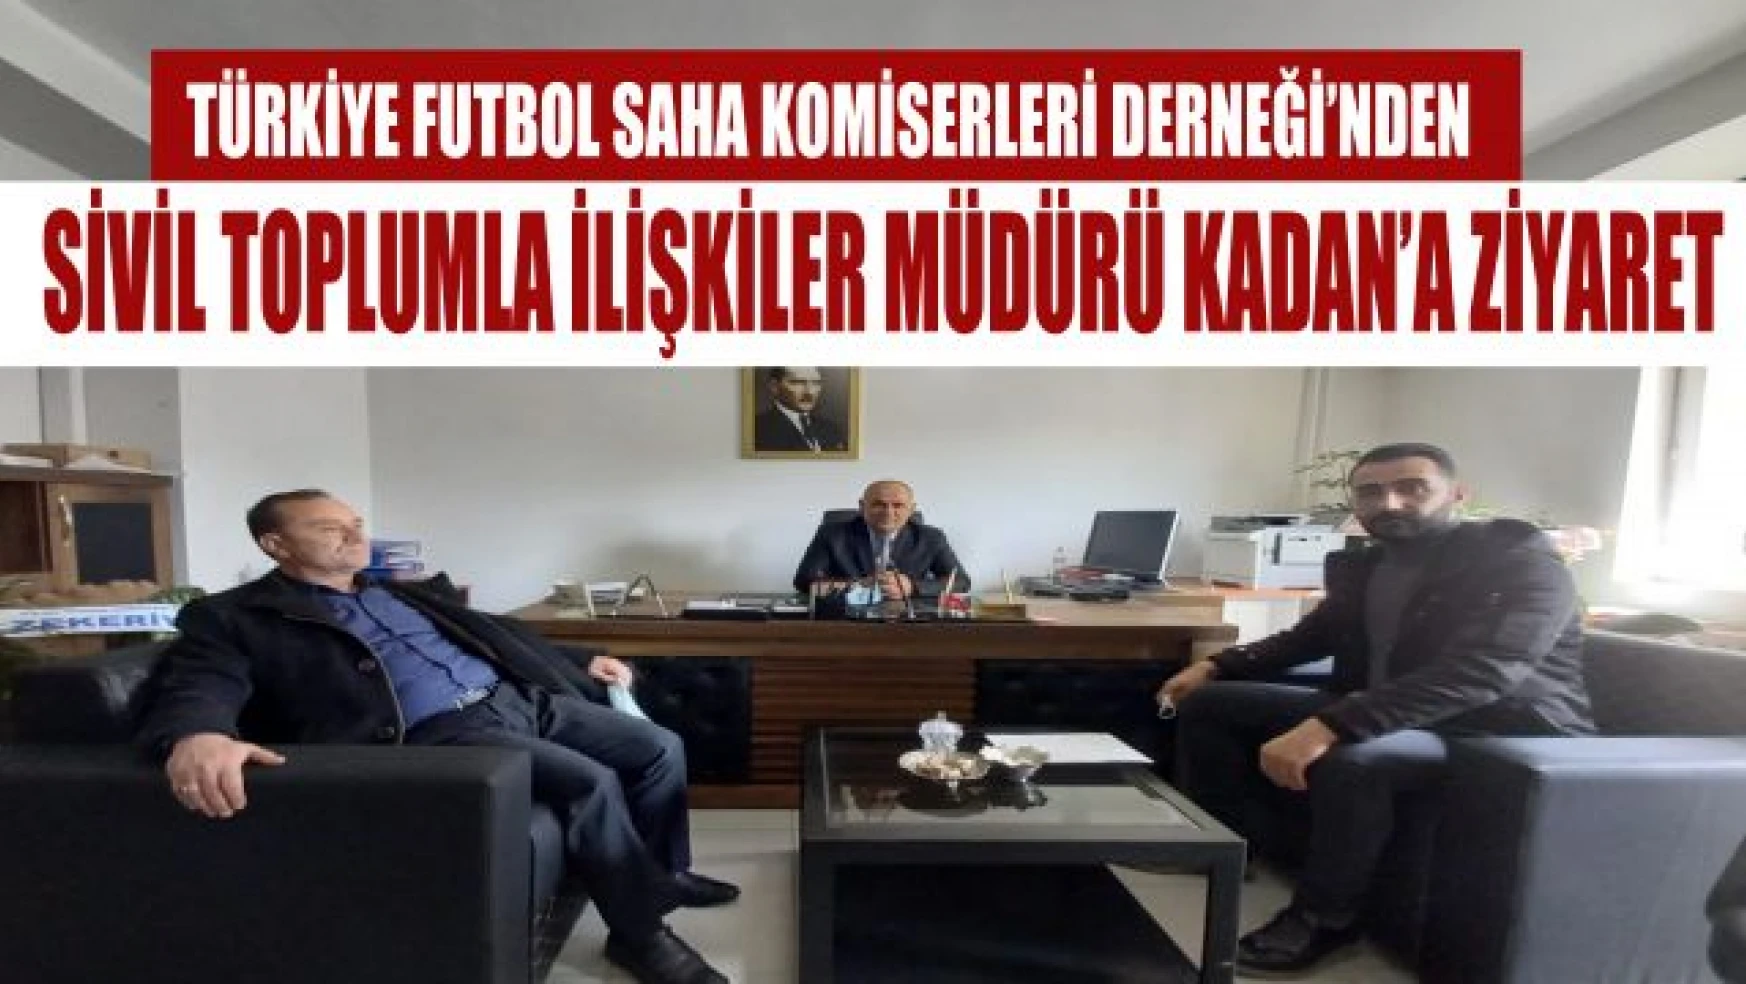 Türkiye Futbol Saha Komiserleri Derneği'nden İl Müdürü Kadan'a hayırlı olsun ziyareti